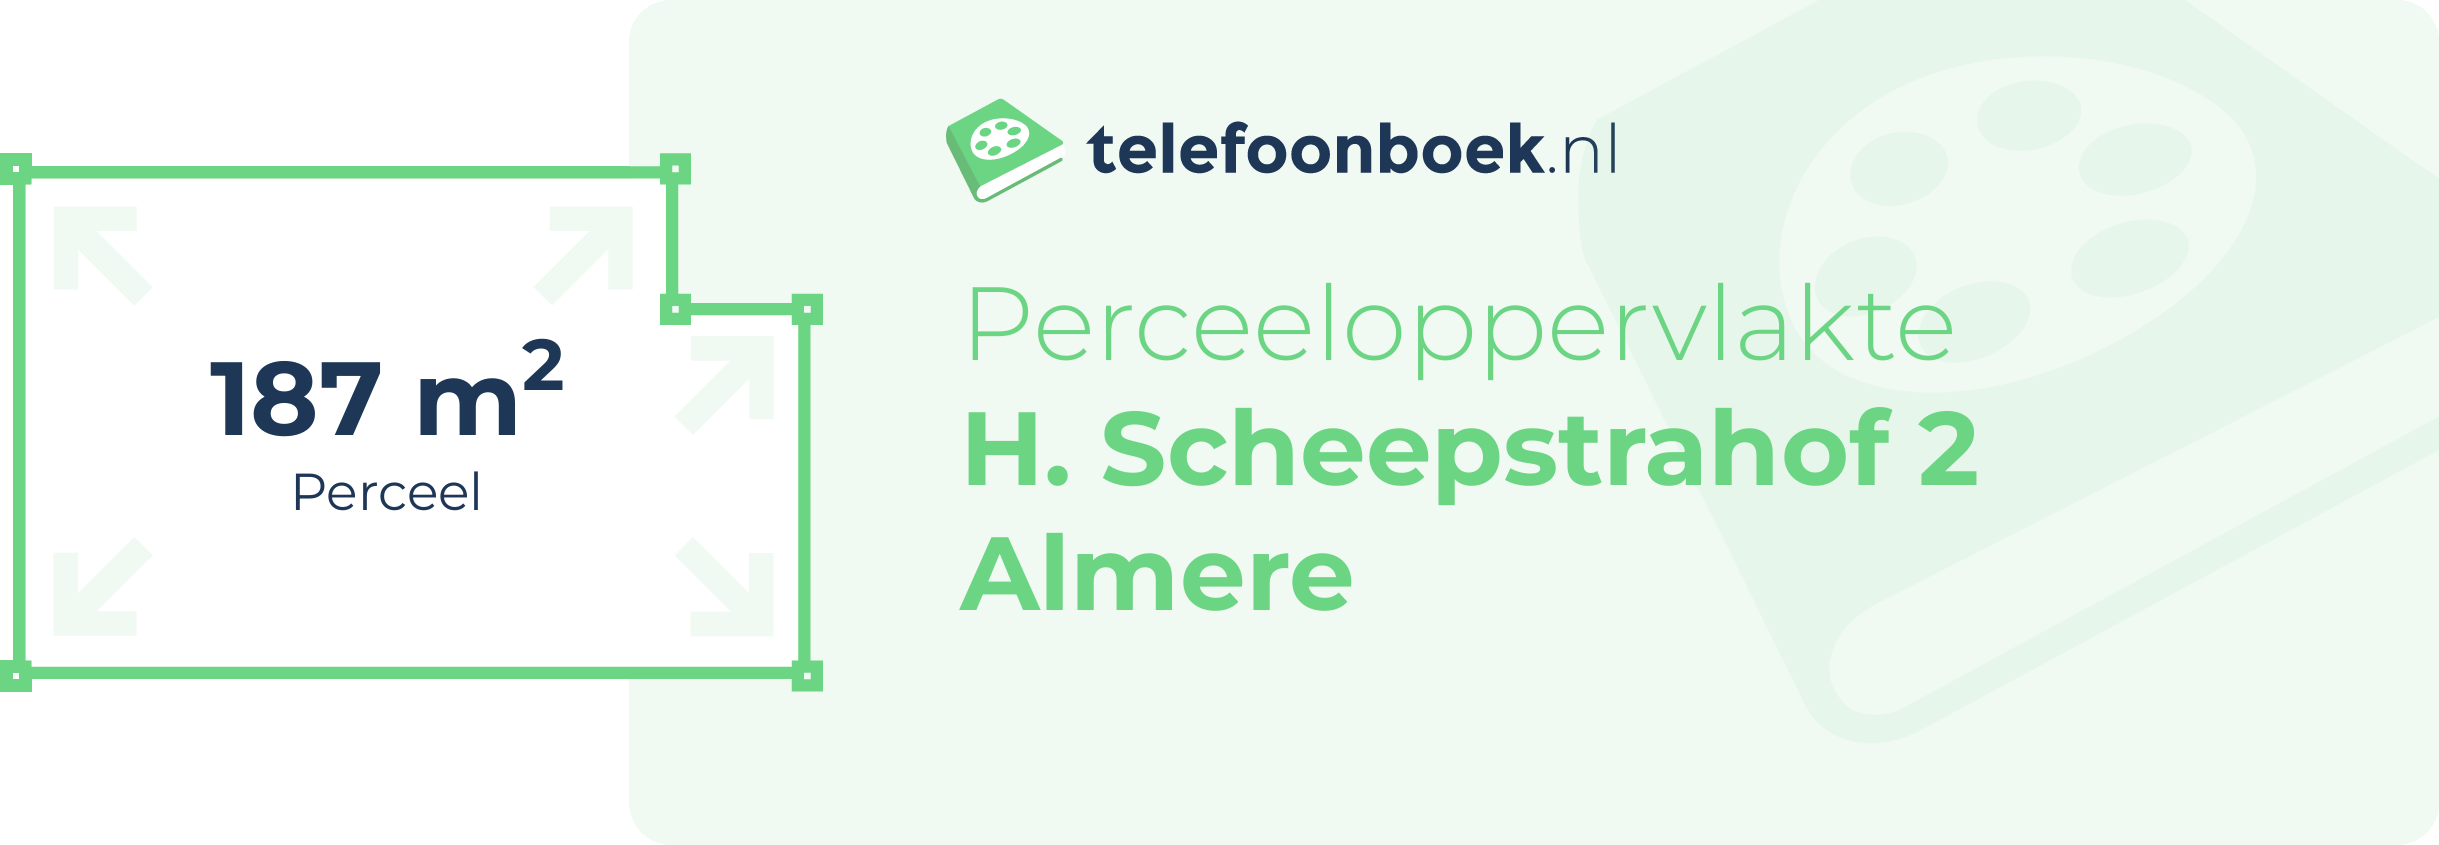 Perceeloppervlakte H. Scheepstrahof 2 Almere